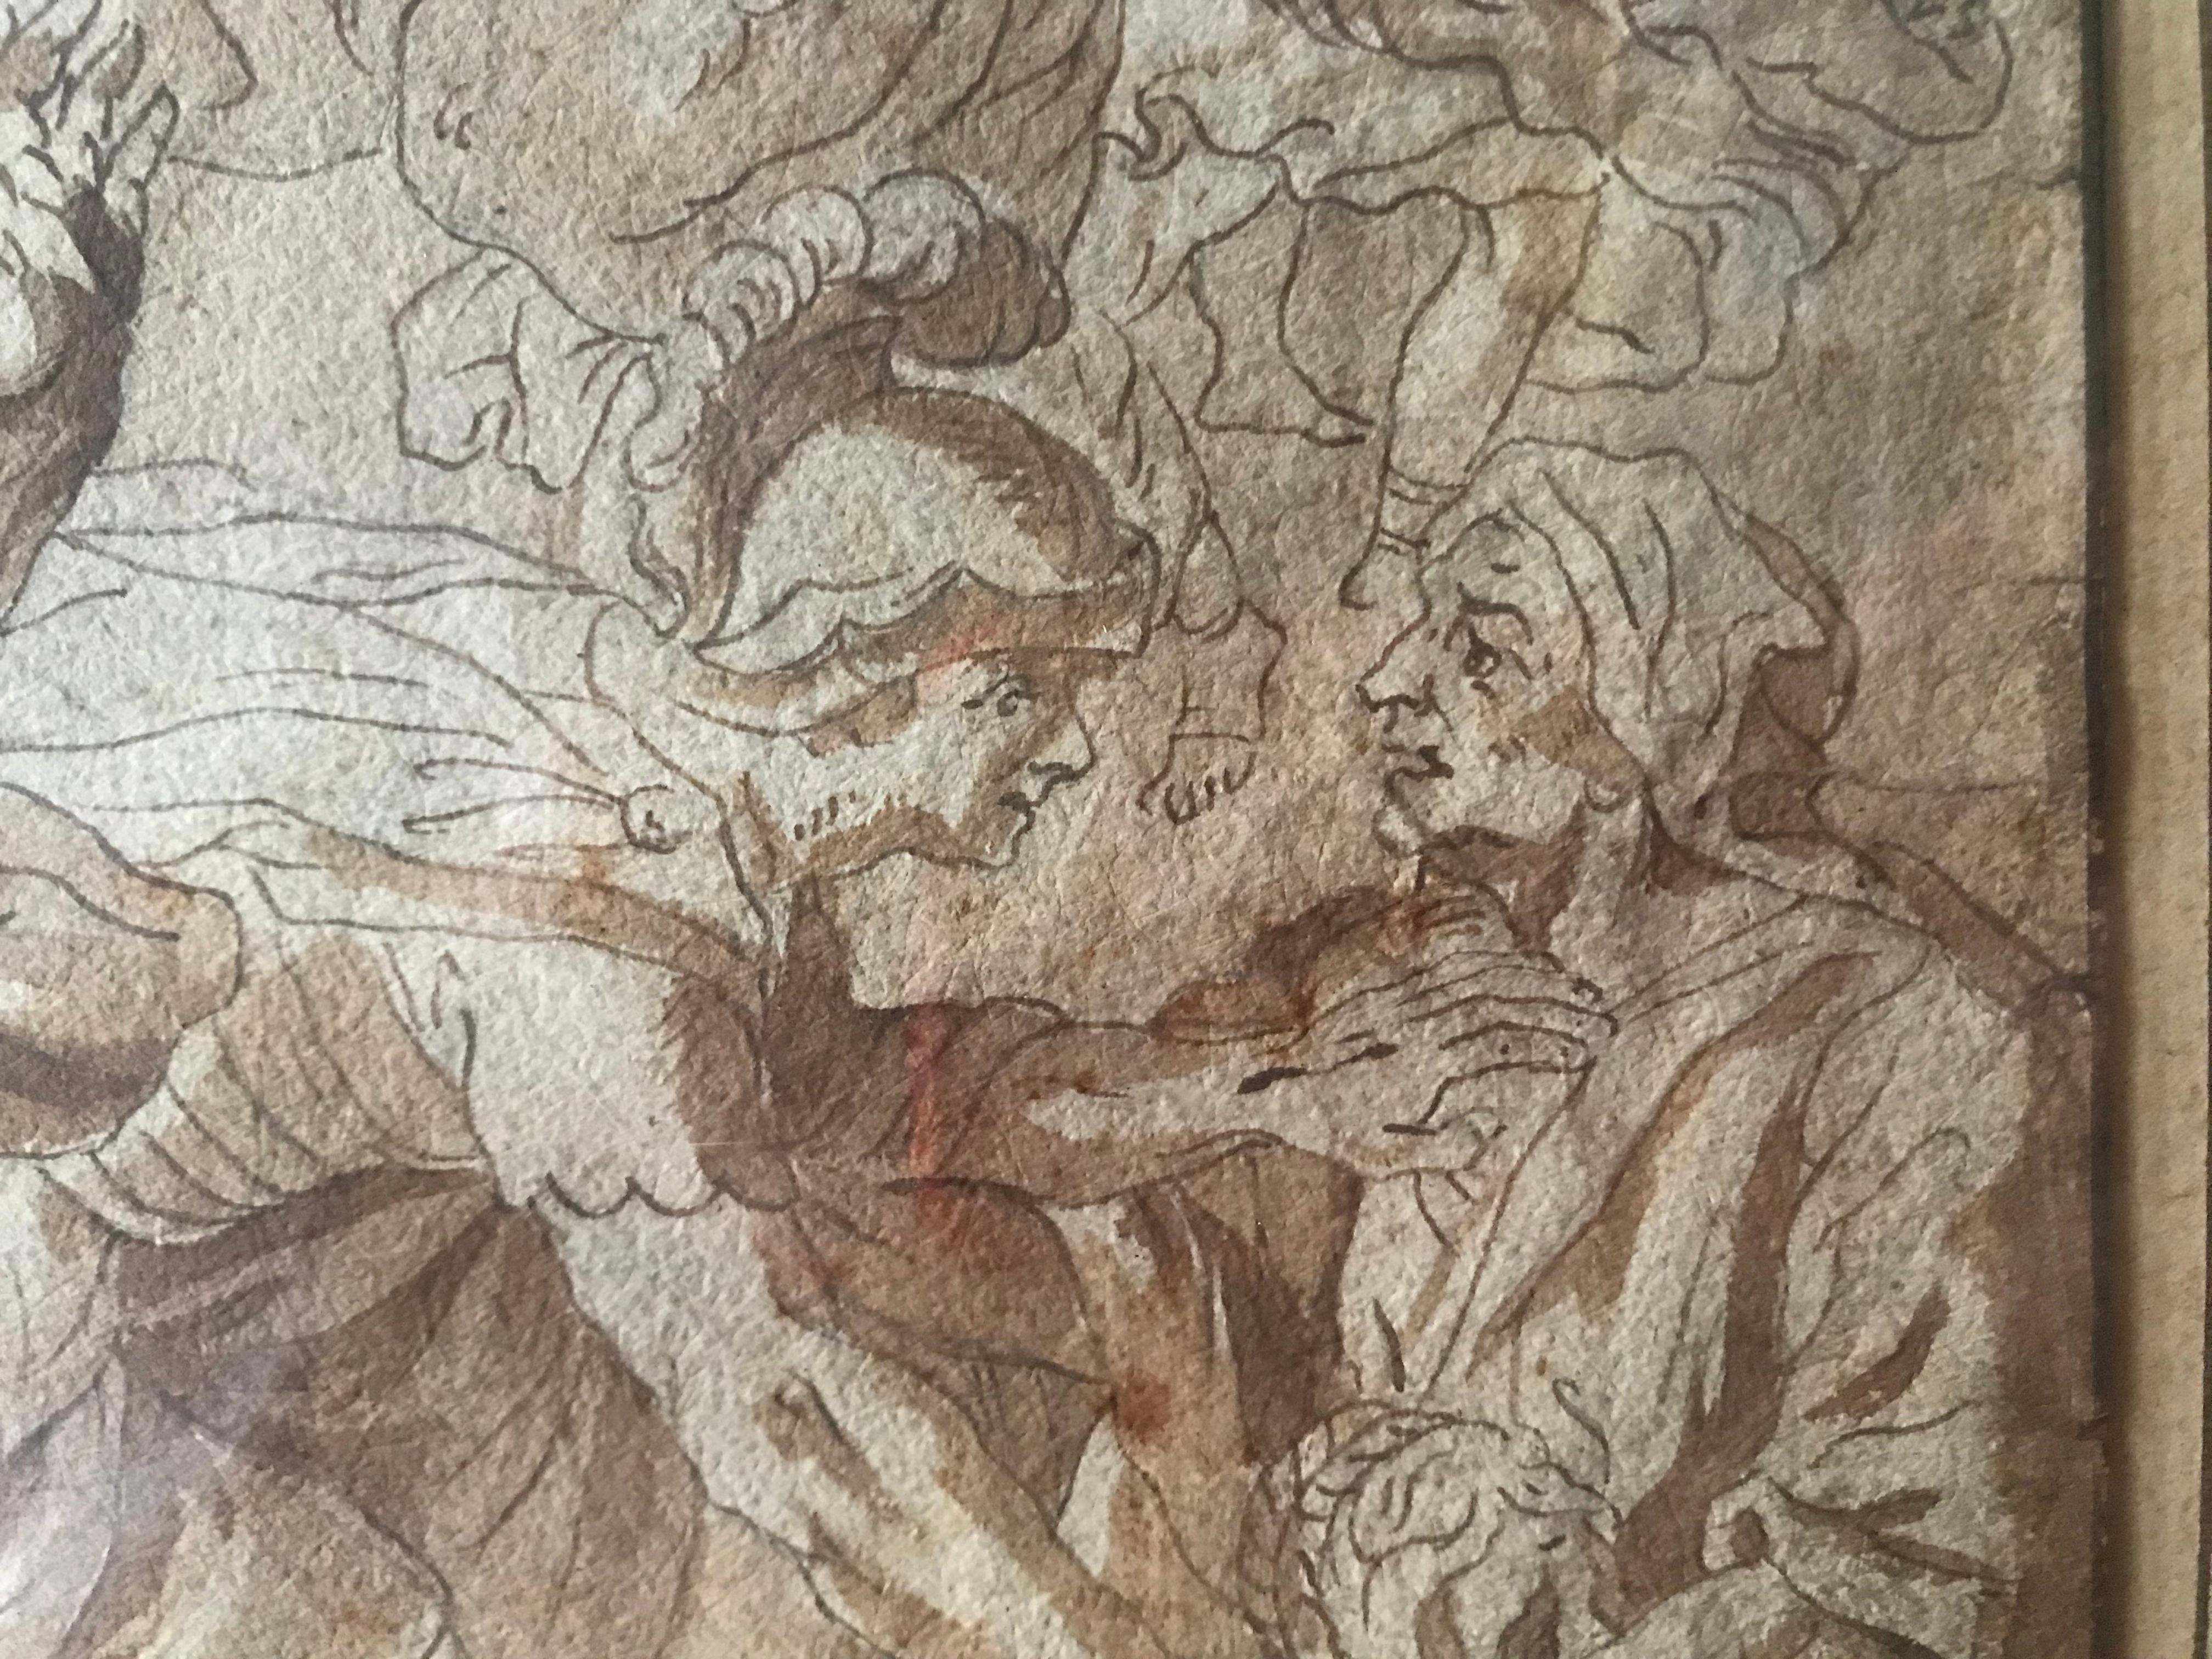 The Rape of the Sabine Woman, encre et crayon. D'après Nicolas Poussin - Marron Figurative Art par (Circle of) Nicolas Poussin